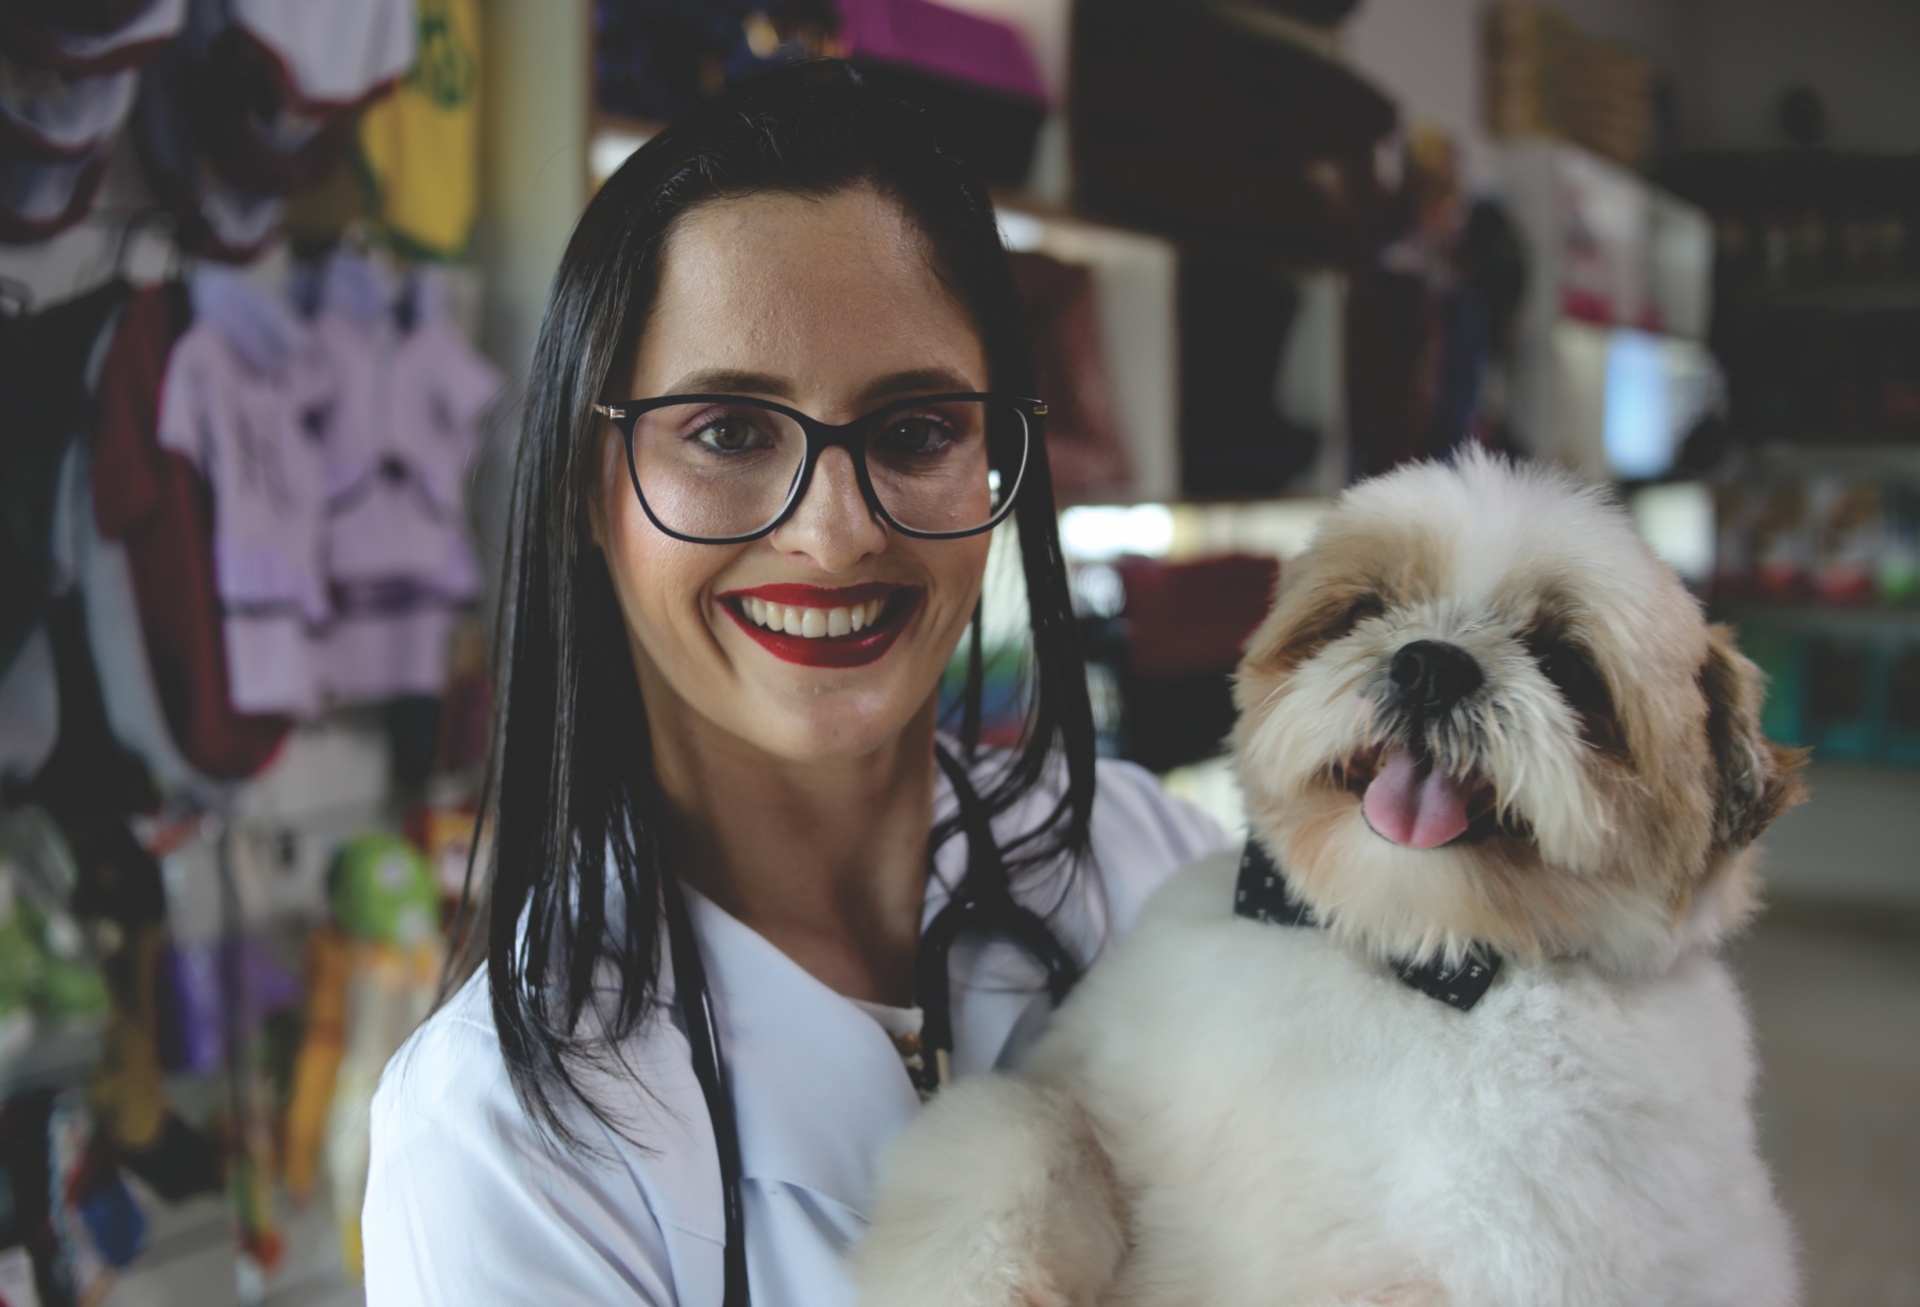 Real Pet - Pet Shop, Banho e Tosa, Rações, Vacinas, Medicamentos e